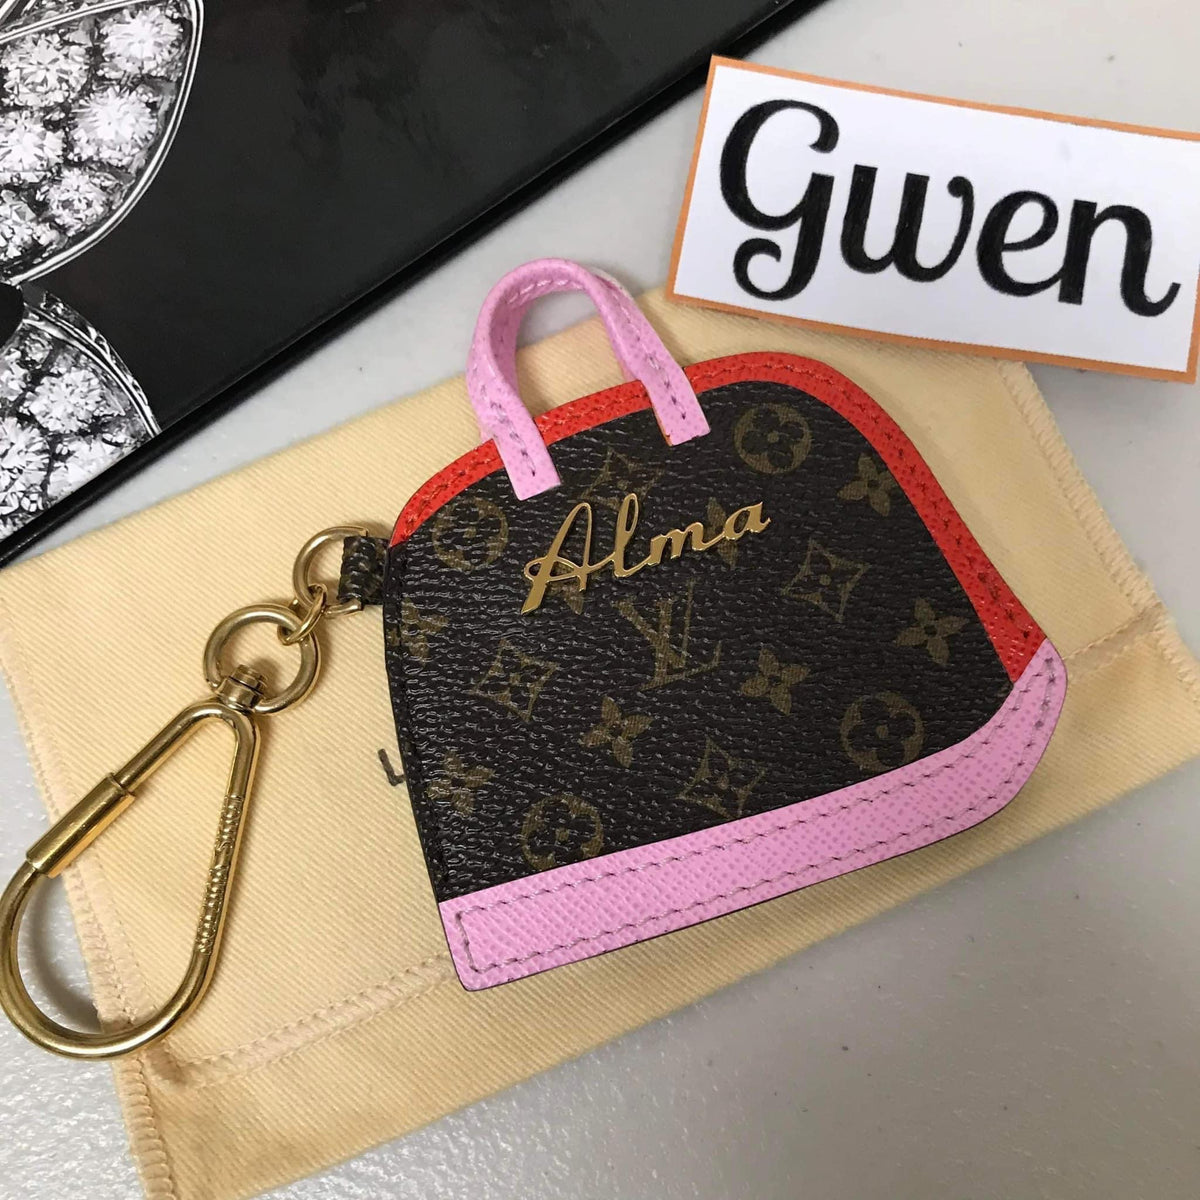 Authentic Louis Vuitton Alma Bag Charm – Gwen's Luxeshop